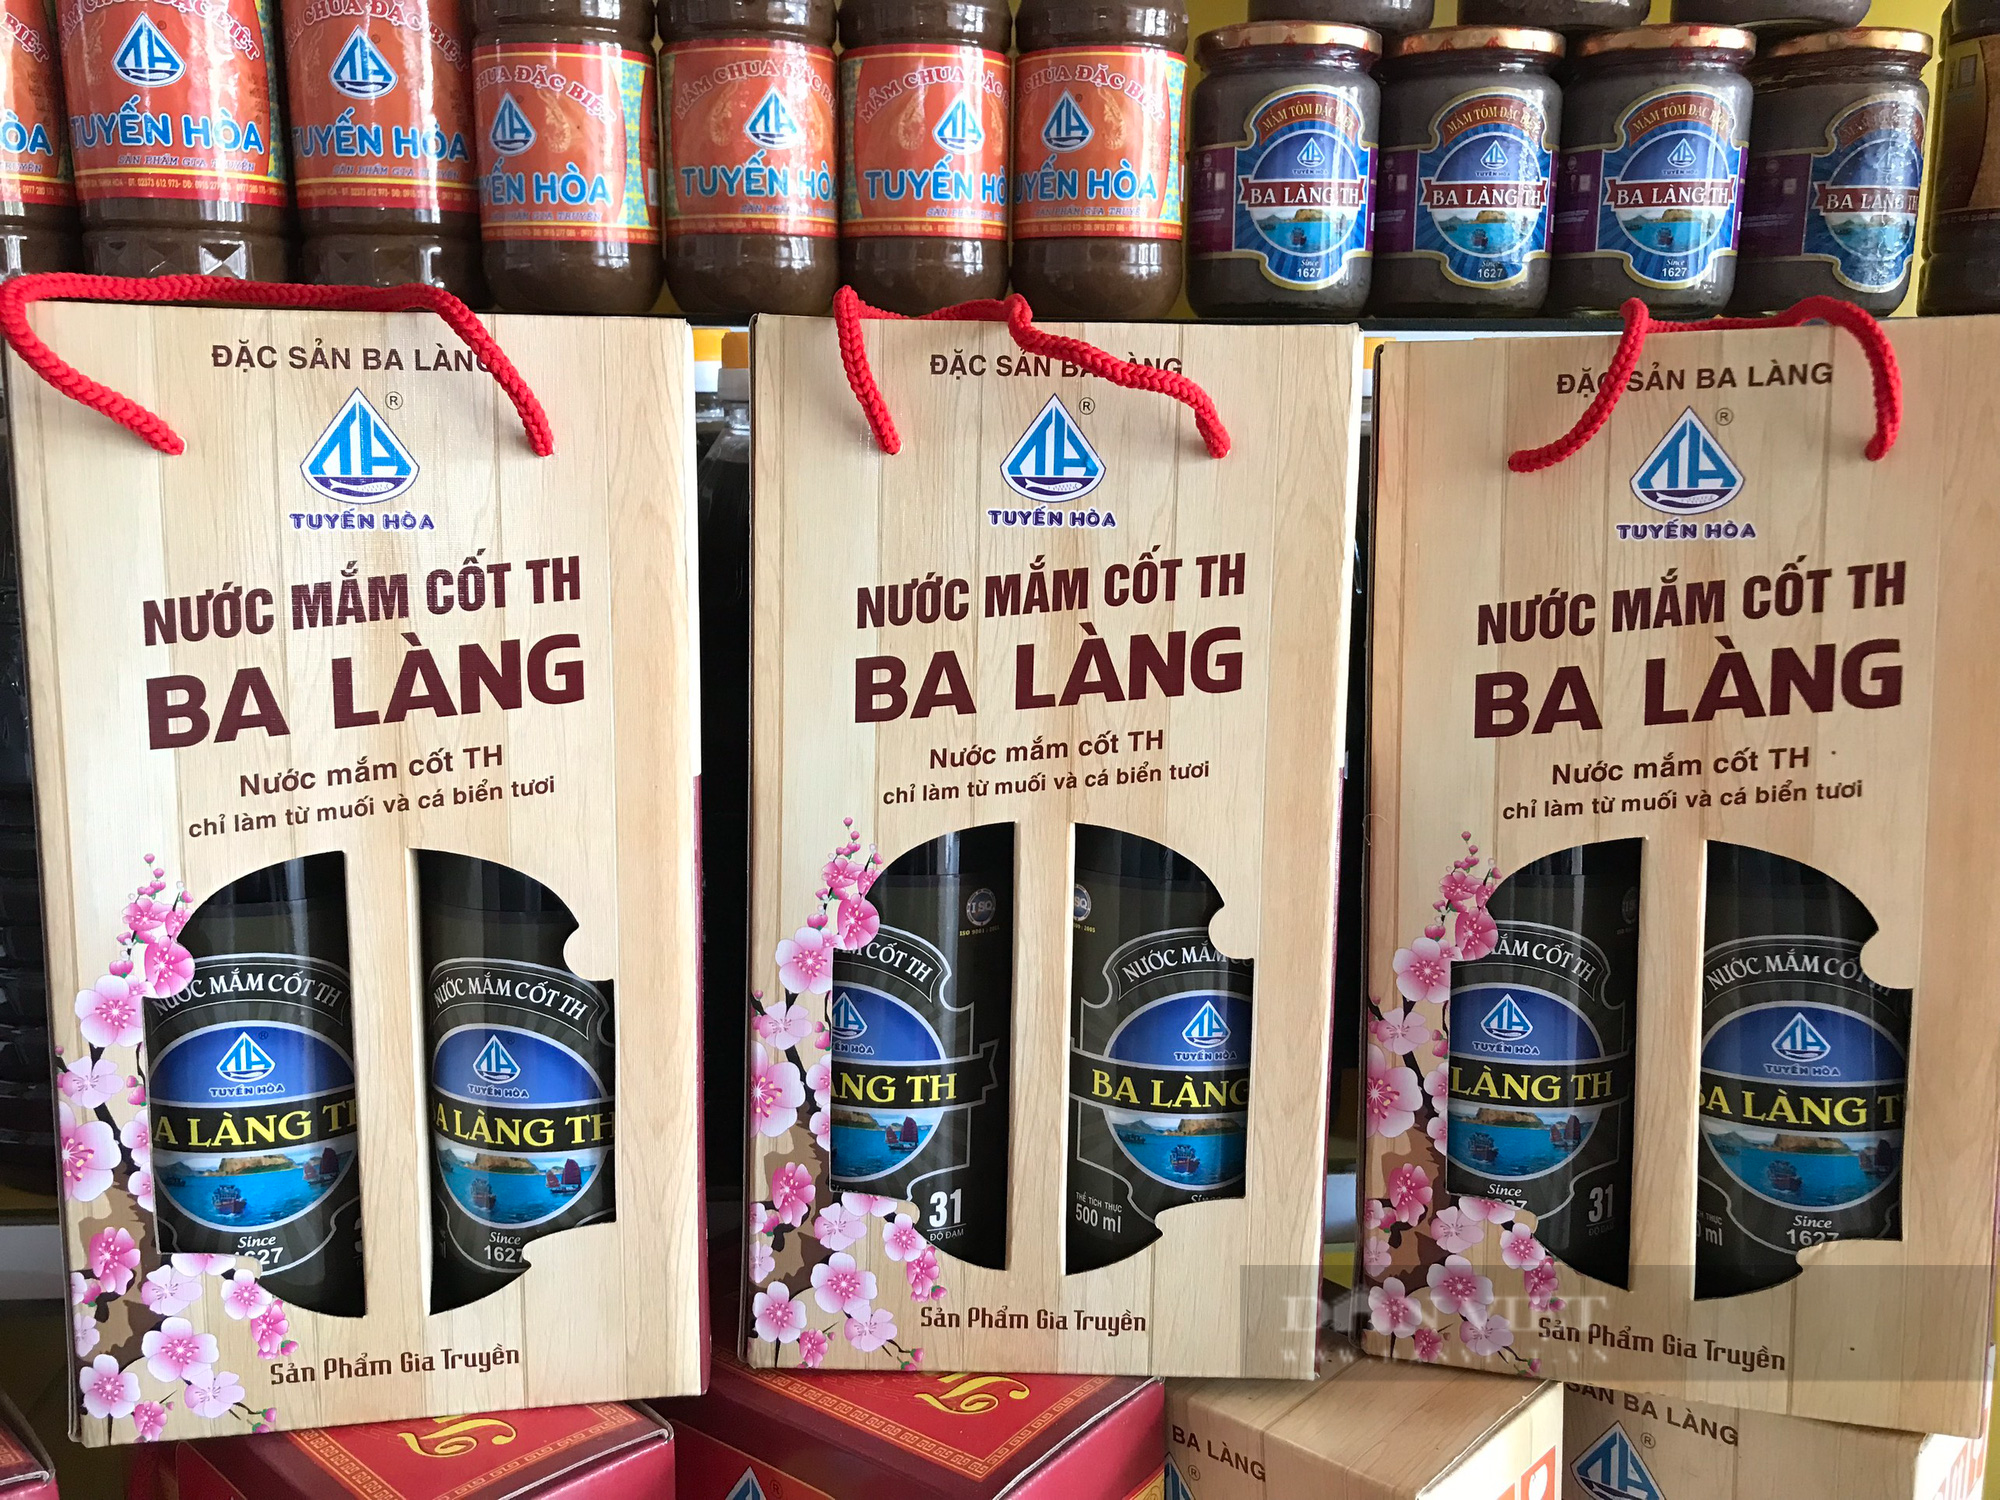 Anh Nguyễn Văn Tuyến người tạo dựng lên thương hiệu nước mắm Ba Làng - Ảnh 4.